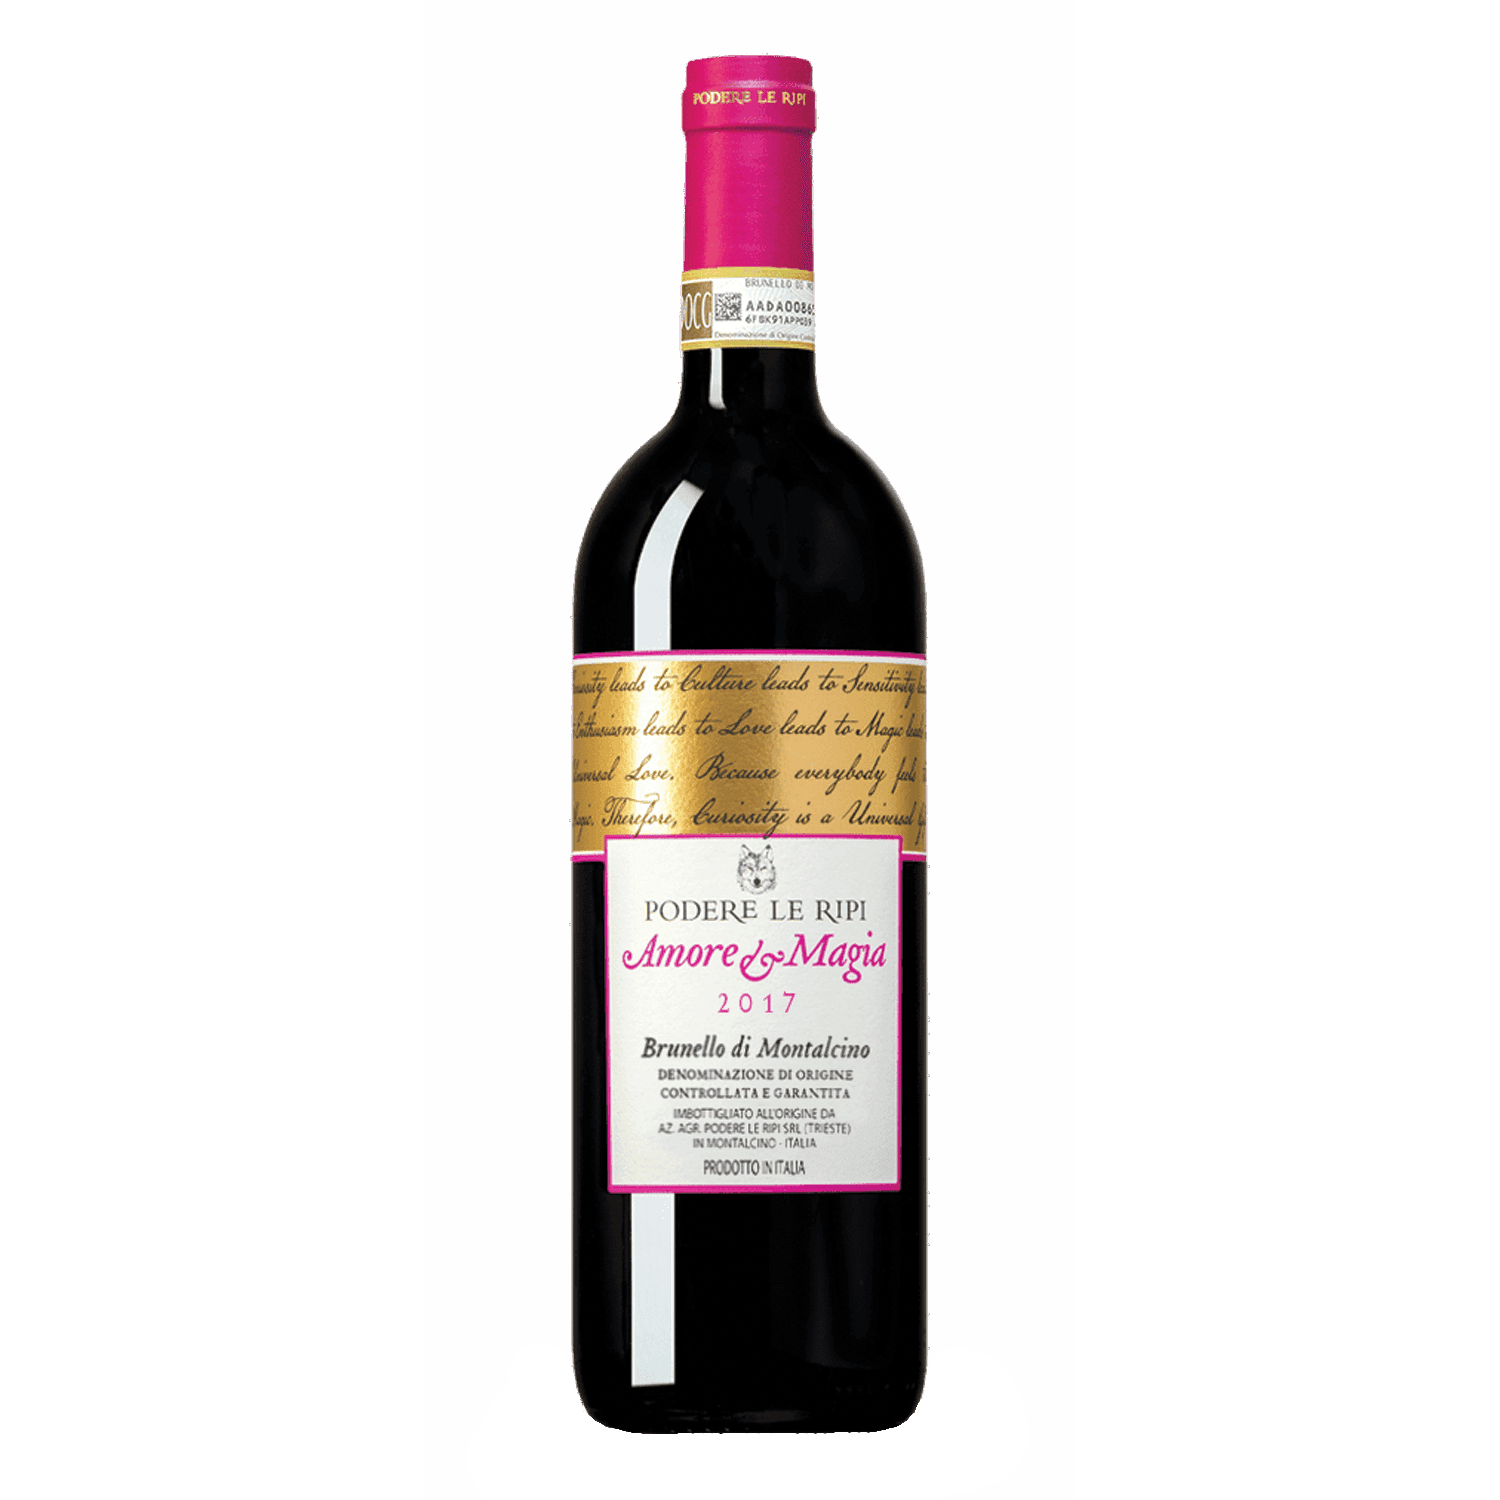 PODERE LE RIPI Brunello di Montalcino Amore e Magia Crveno vino, 2017, 0.75l